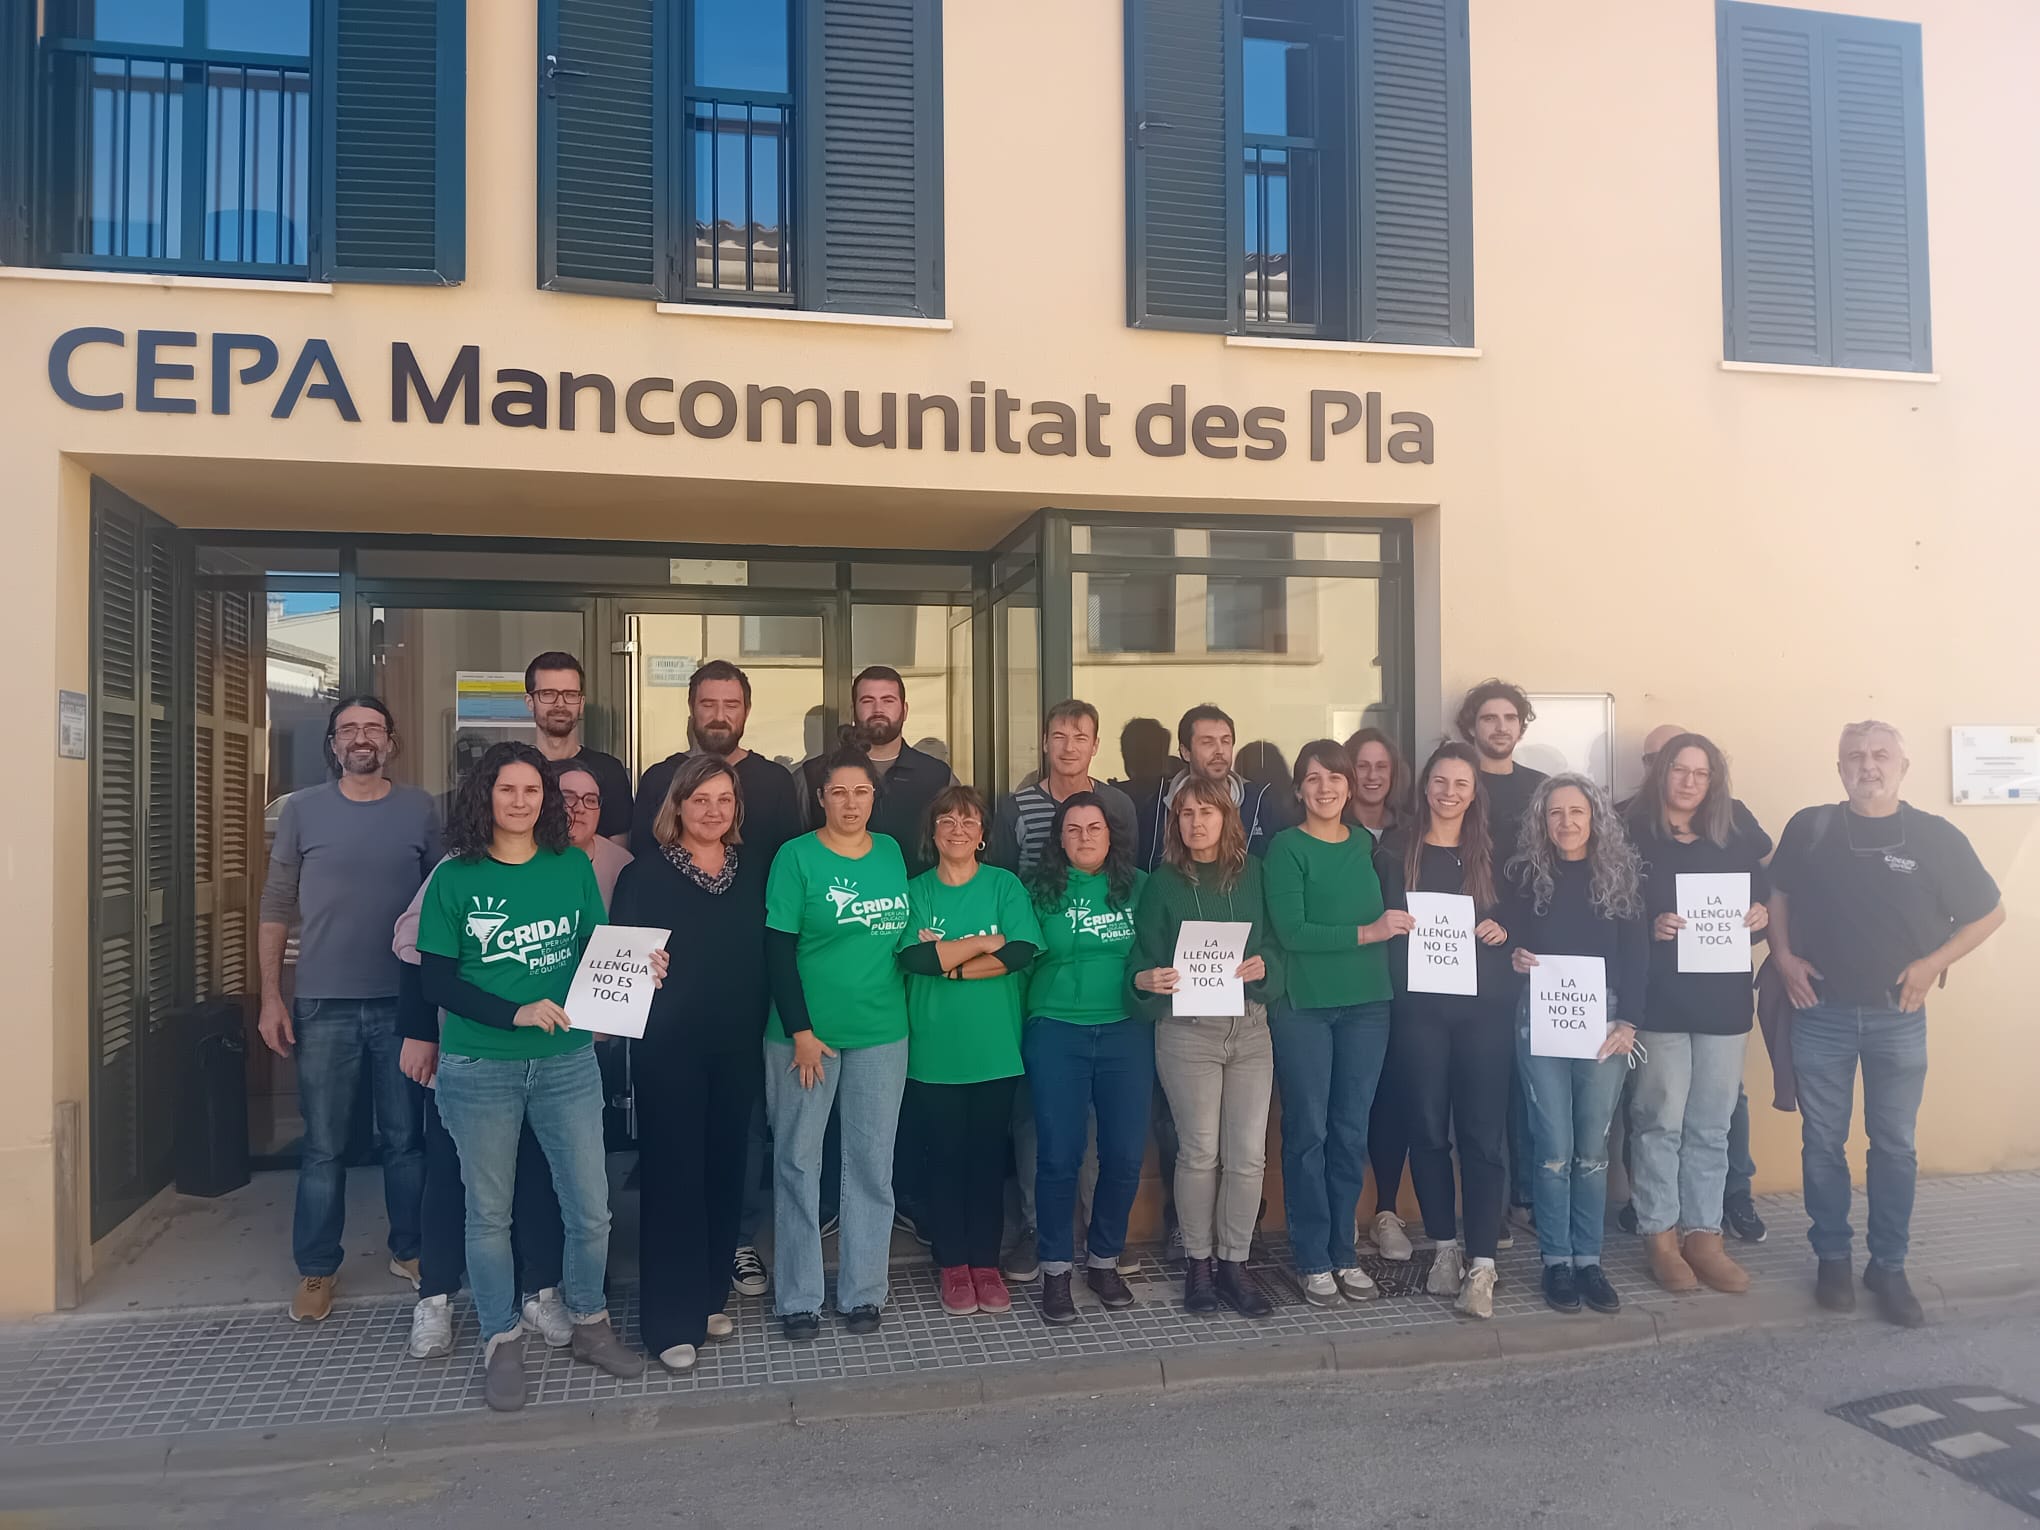 Les escoles de Costitx, Algaida, Vilafranca, Llubí, Montuïri i el CEPA Mancomunitat Pla s’adhereixen a “La llengua no es toca”